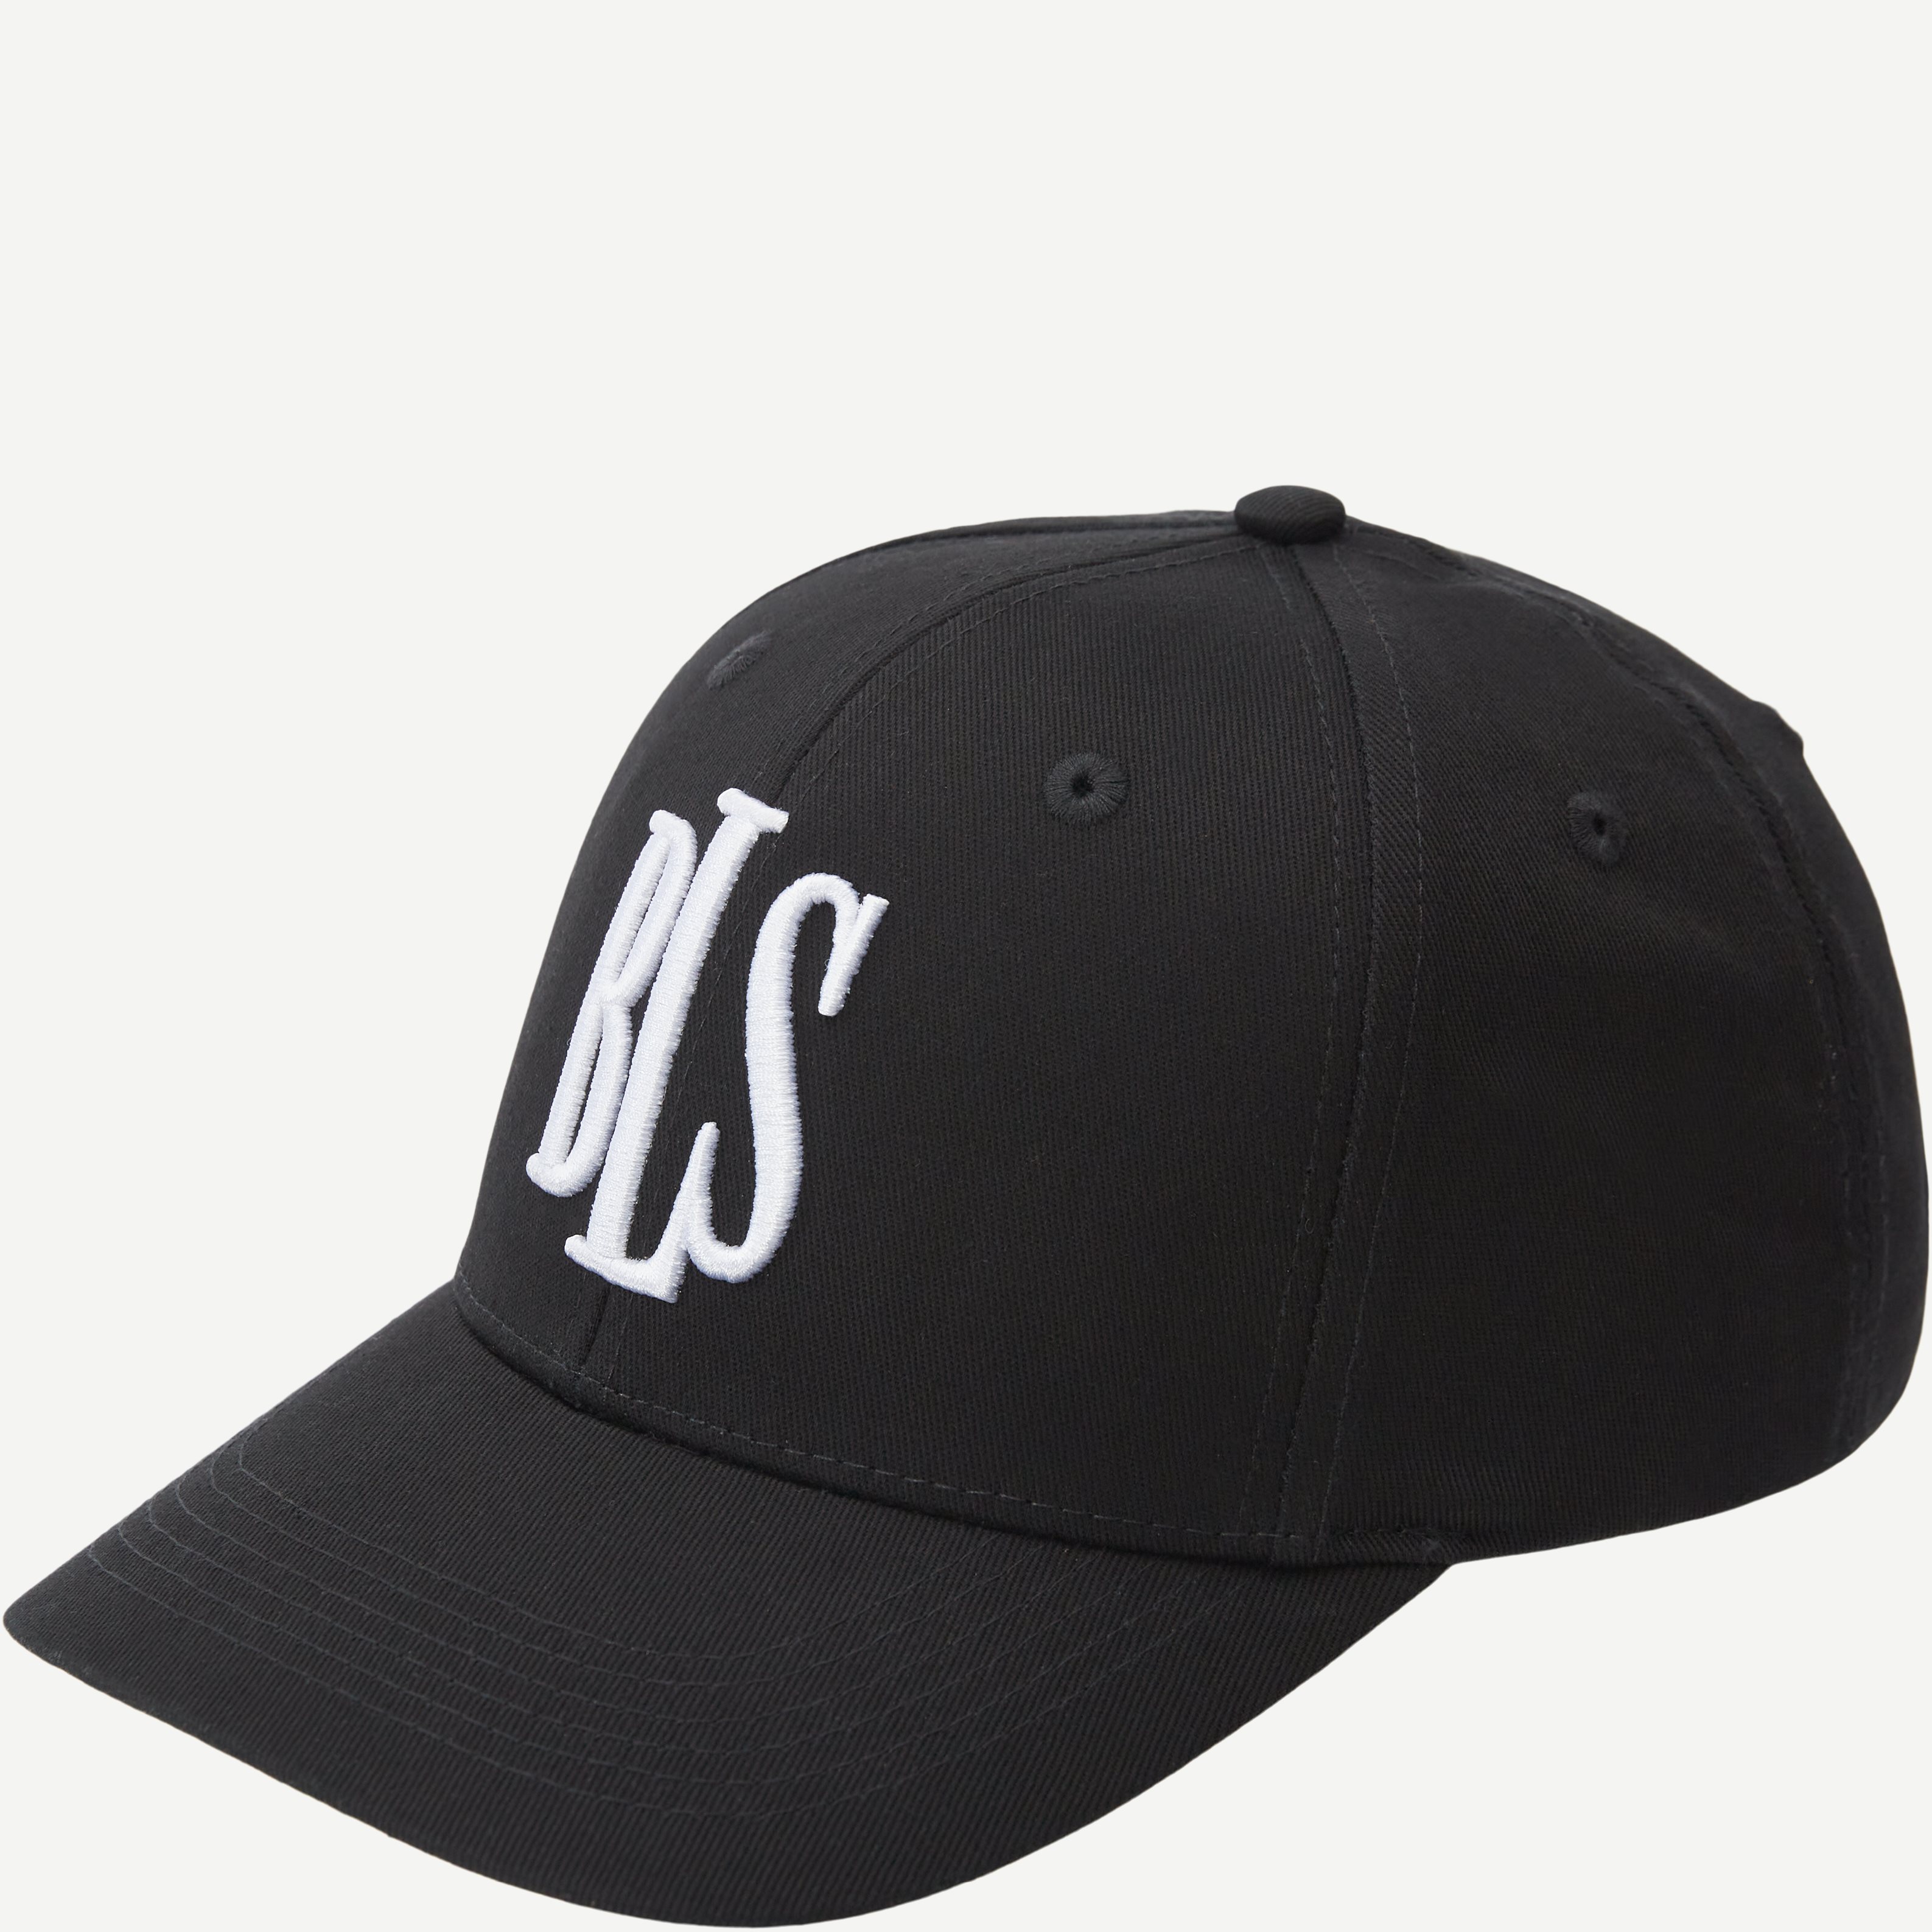 BLS Caps CLASSIC BASEBALL CAP 99101 Sort